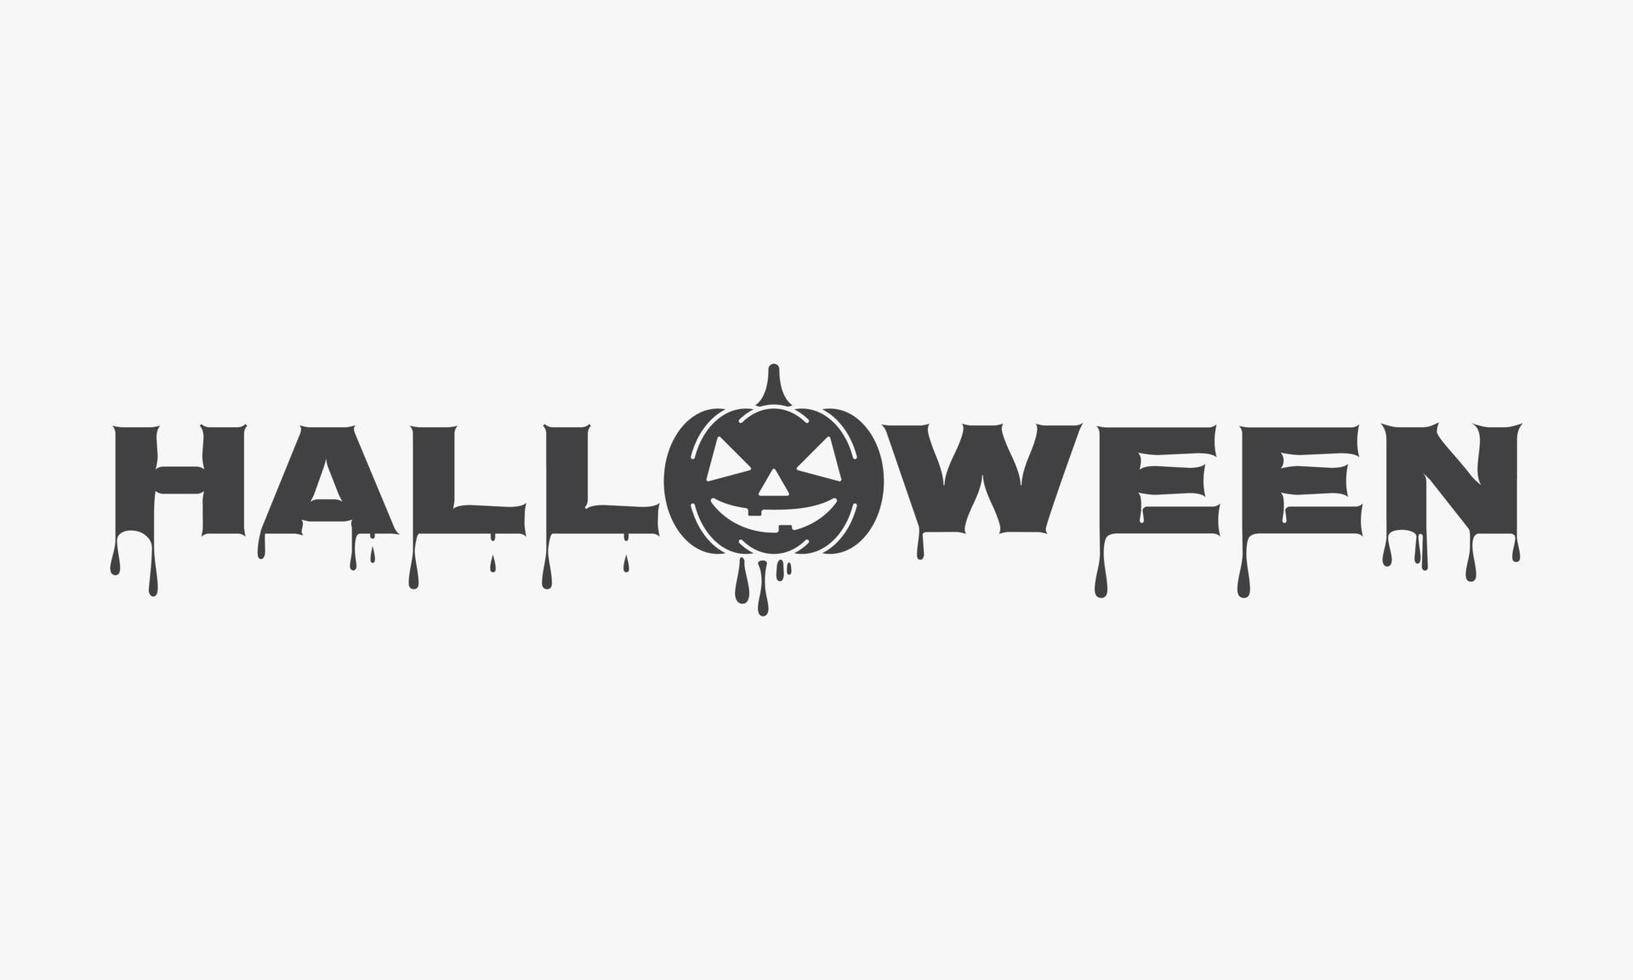 testo di halloween con vettore di disegno dell'icona della zucca.